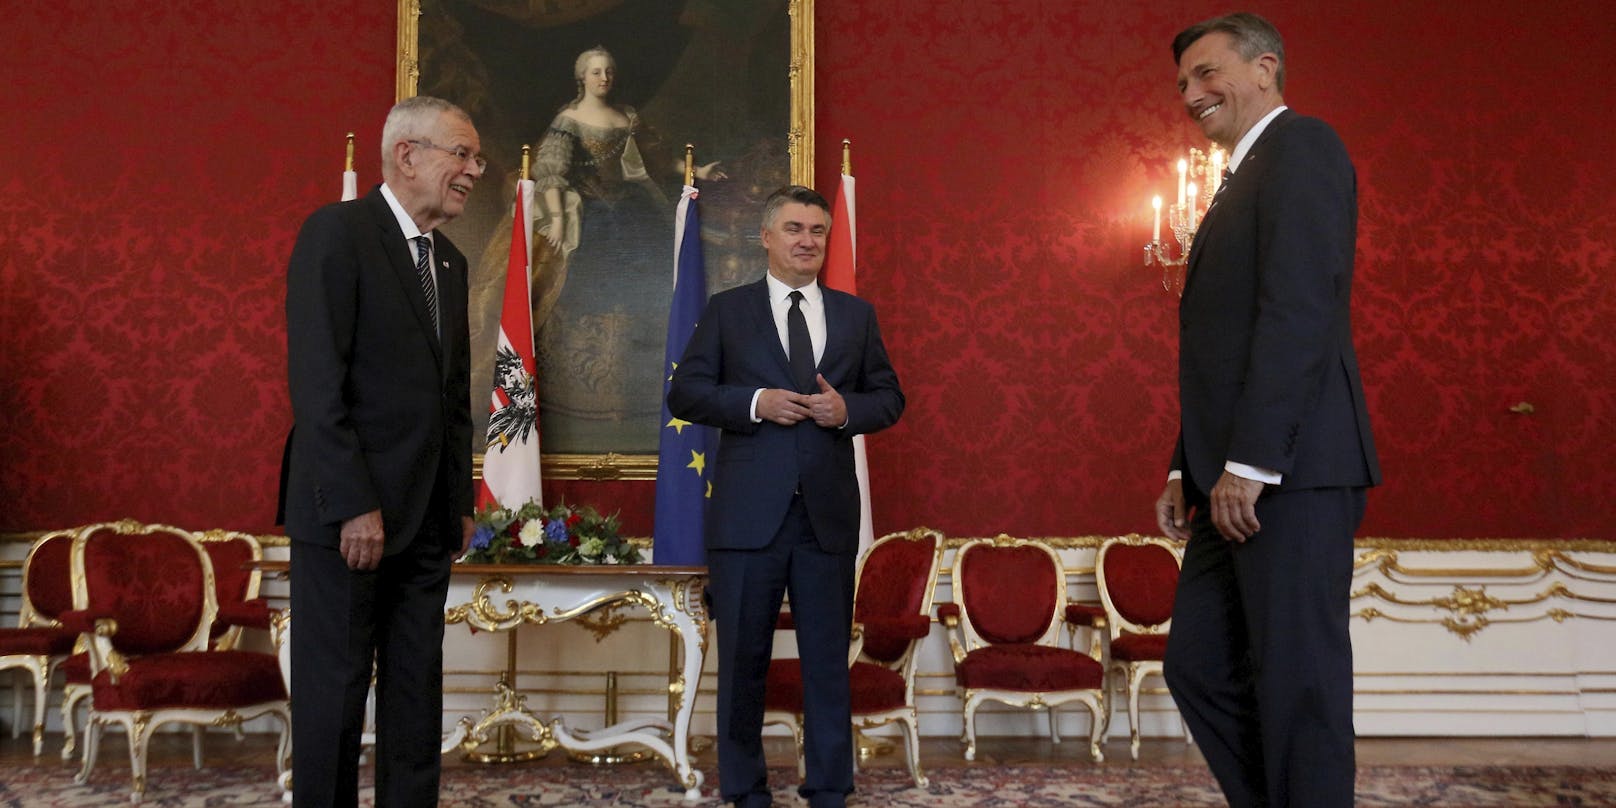 Van der Bellen empfing die beiden Präsidenten aus Slowenien und Kroatien.